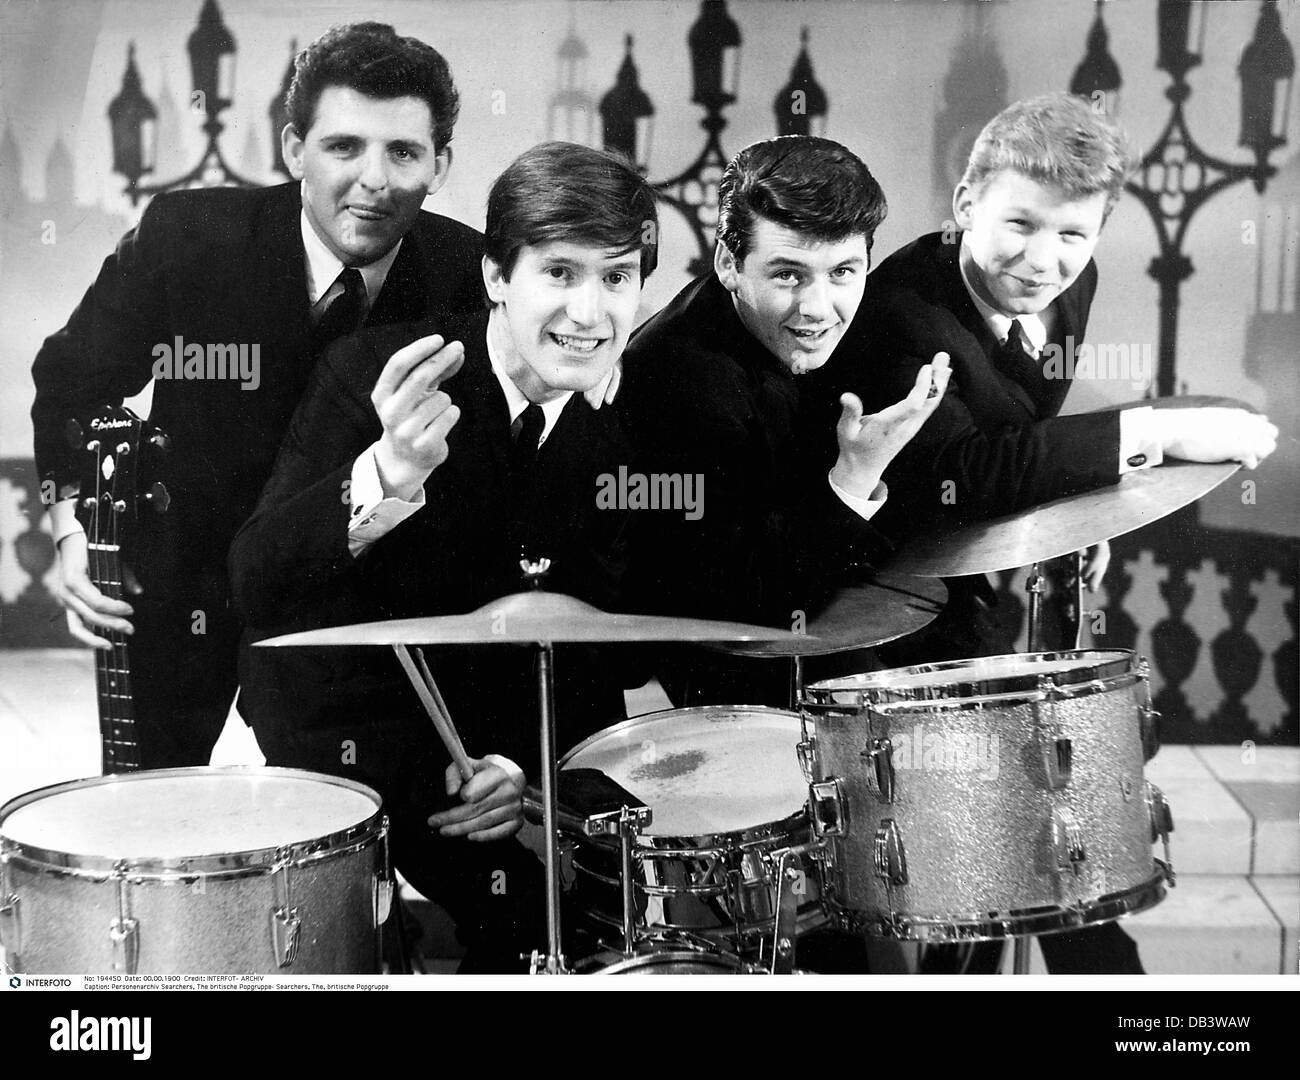 Chercheurs, The, fondé en 1960, British Rock band, photo de groupe, 1964, Banque D'Images